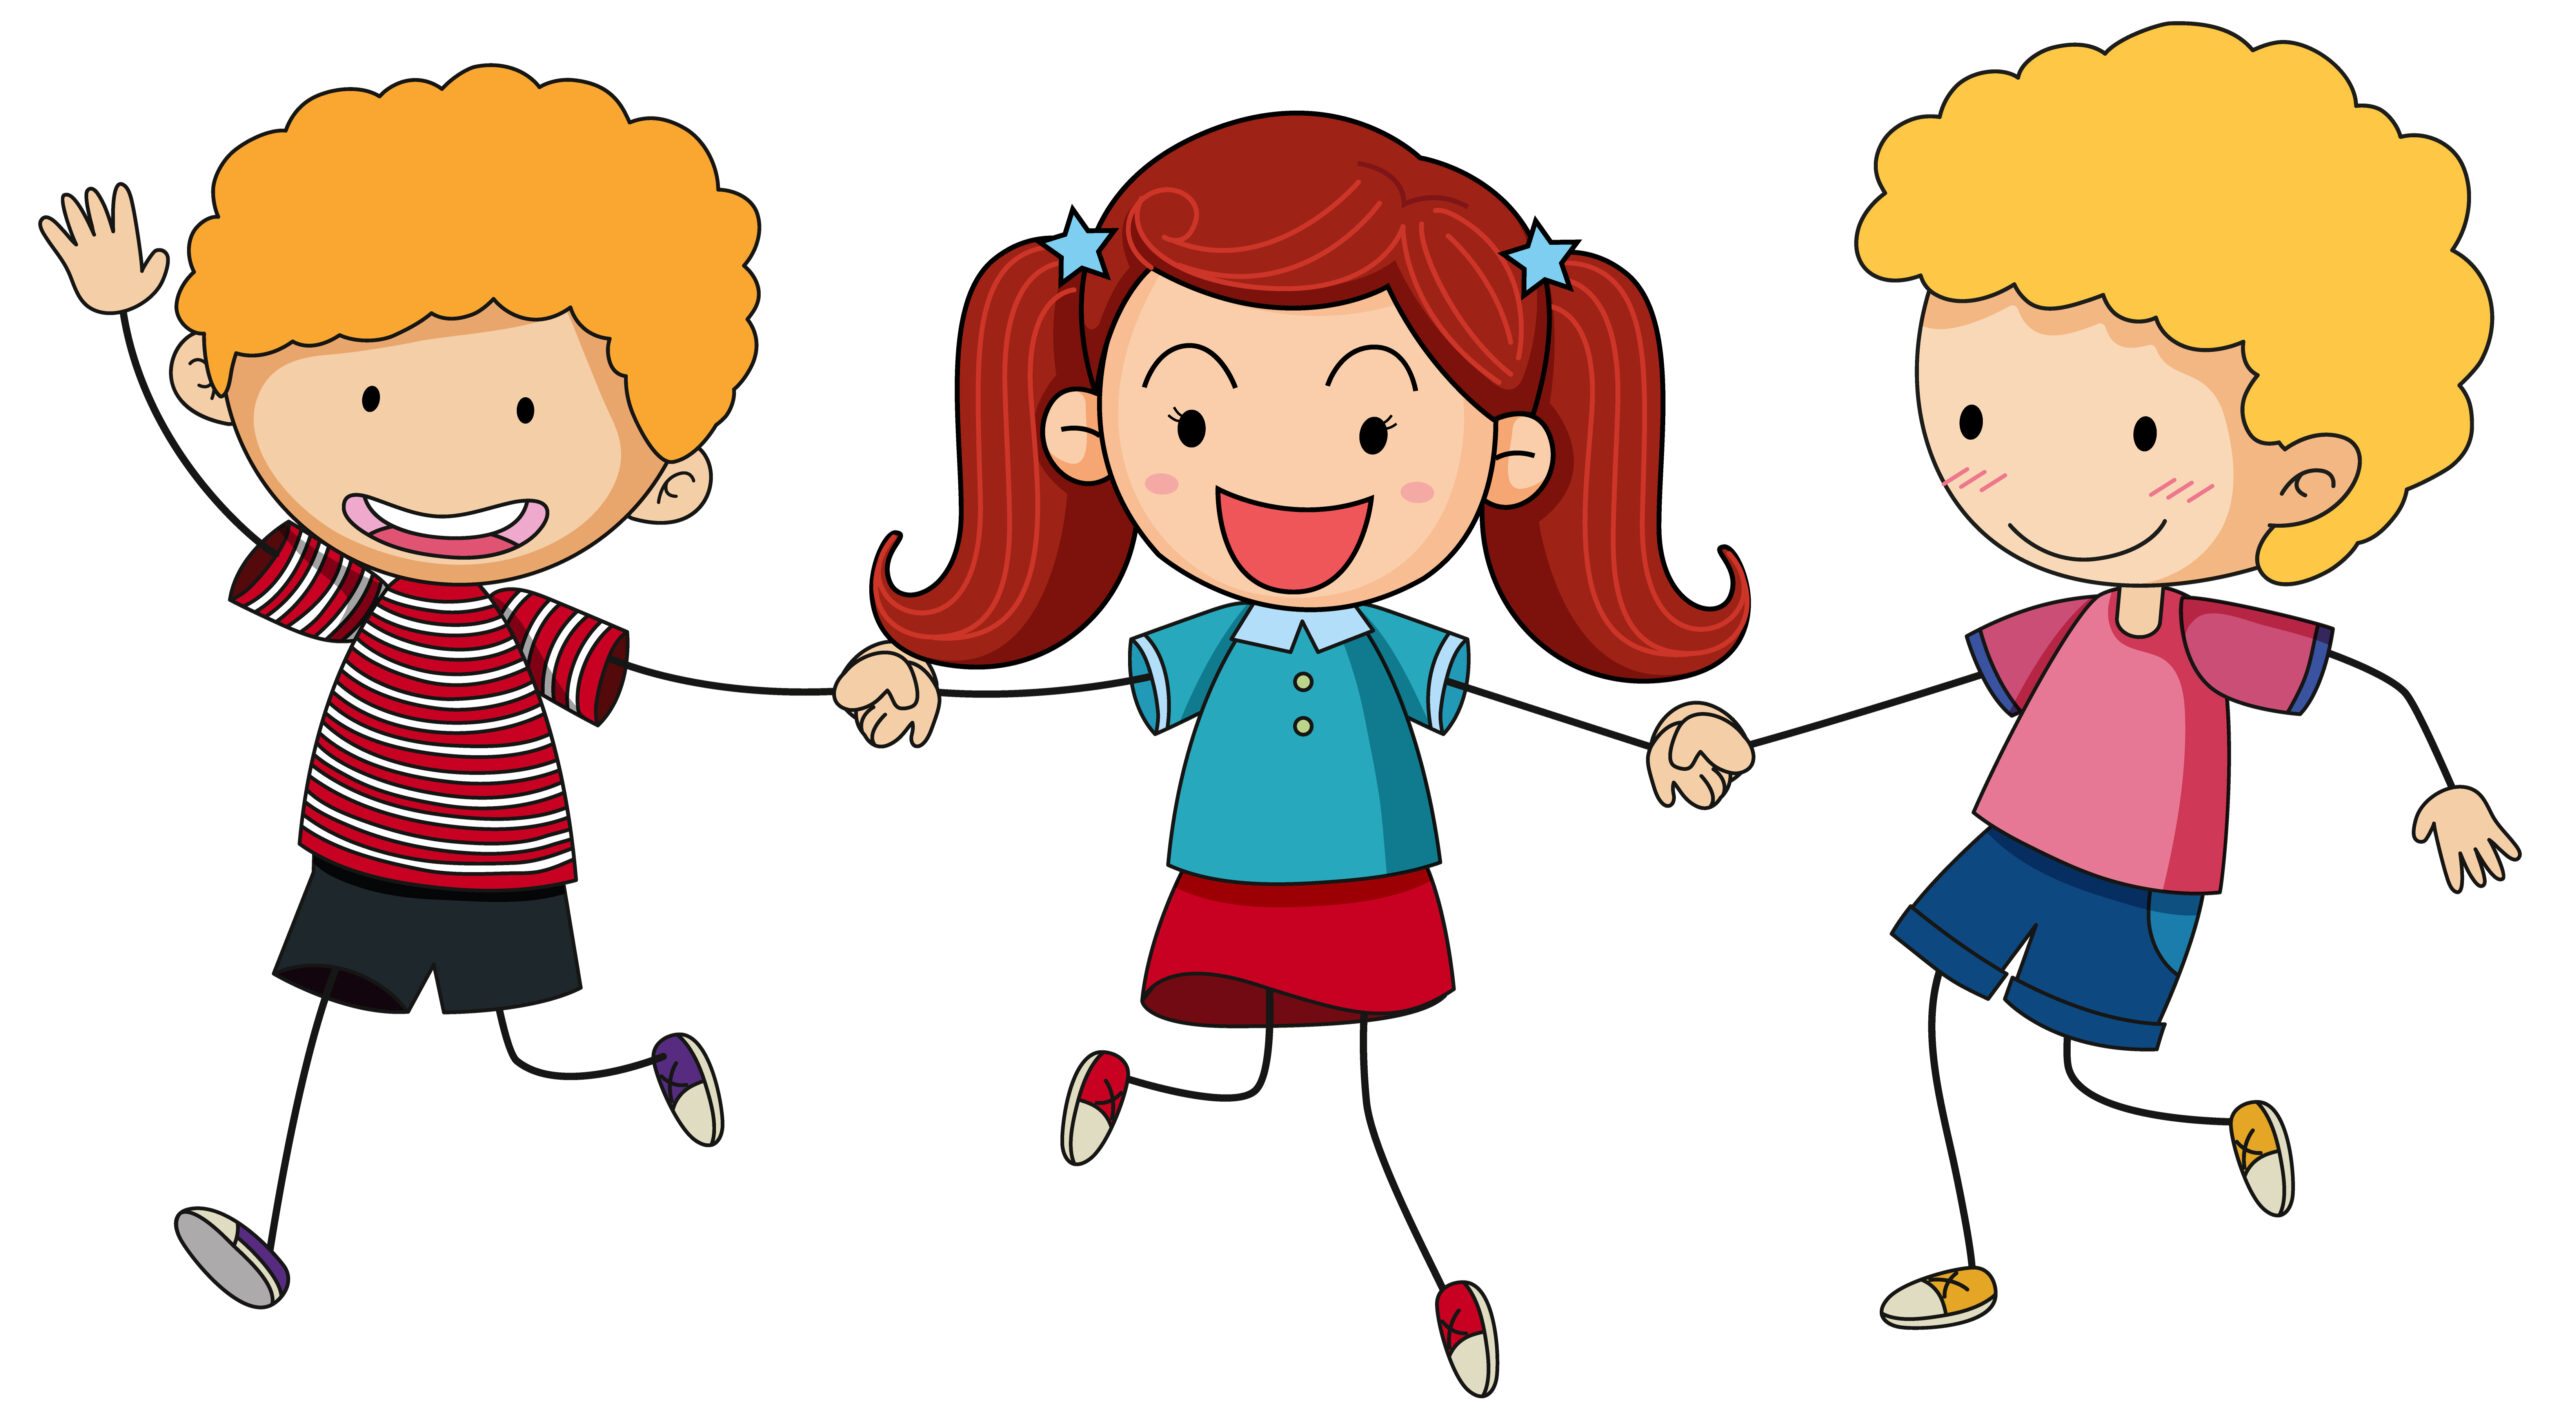 Grafika przedstawia troję uśmiechniętych i podskakujących dzieci w letnich ubraniach. Dziewczynka w dwóch kitkach znajduje się w środku a po bokach dwoje blond chłopców.